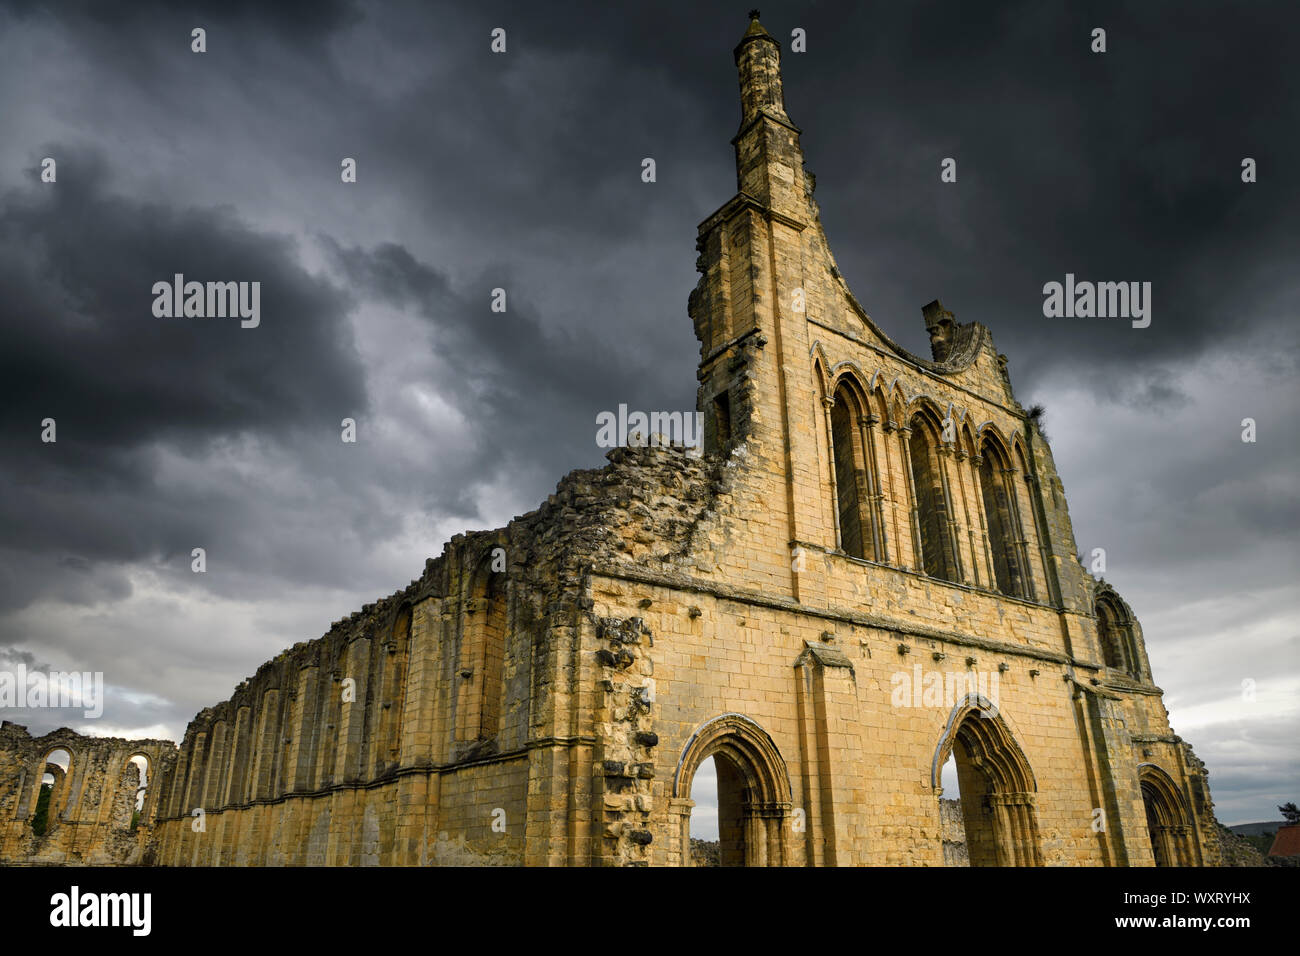 Grande église médiévale ruines de Byland Abbey North Yorkshire Angleterre avec dark storm clouds at sunset Banque D'Images